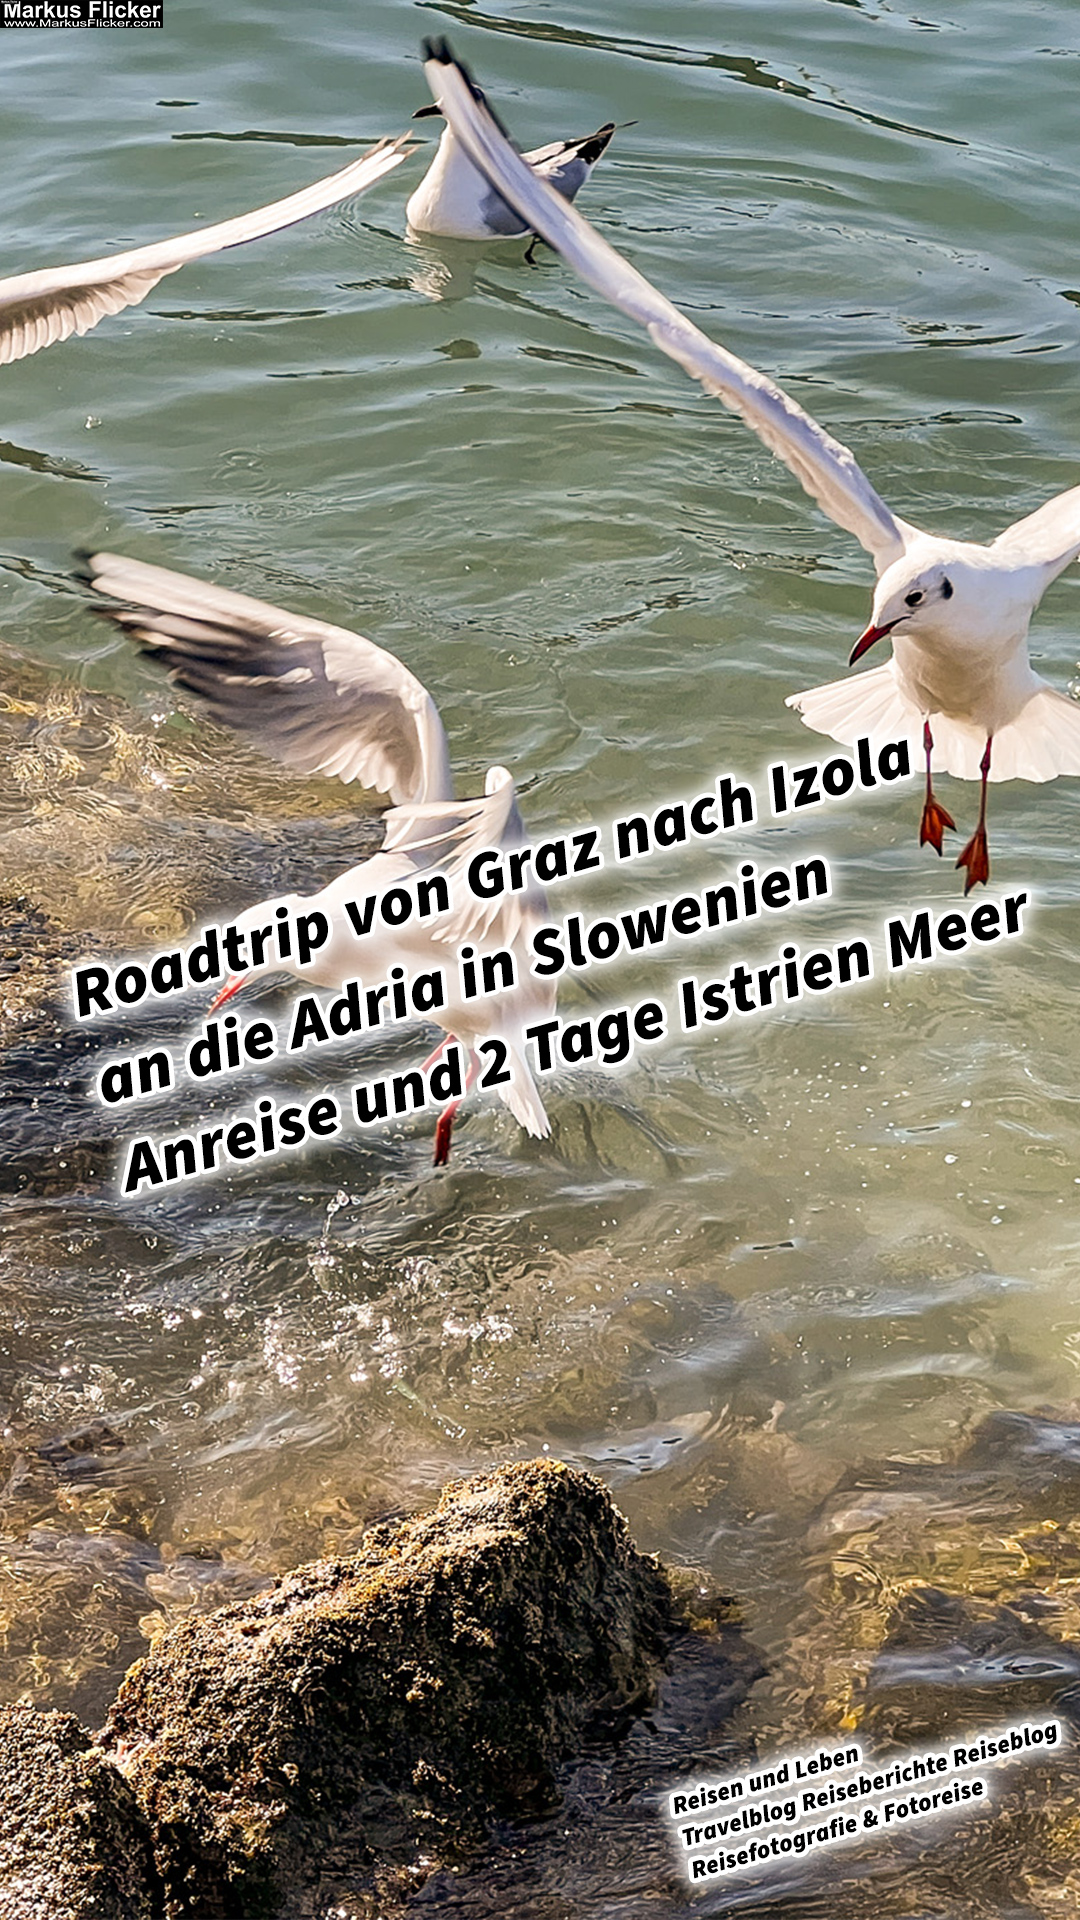 Roadtrip von Graz nach Izola an die Adria in Slowenien Anreise und 2 Tage Istrien Meer